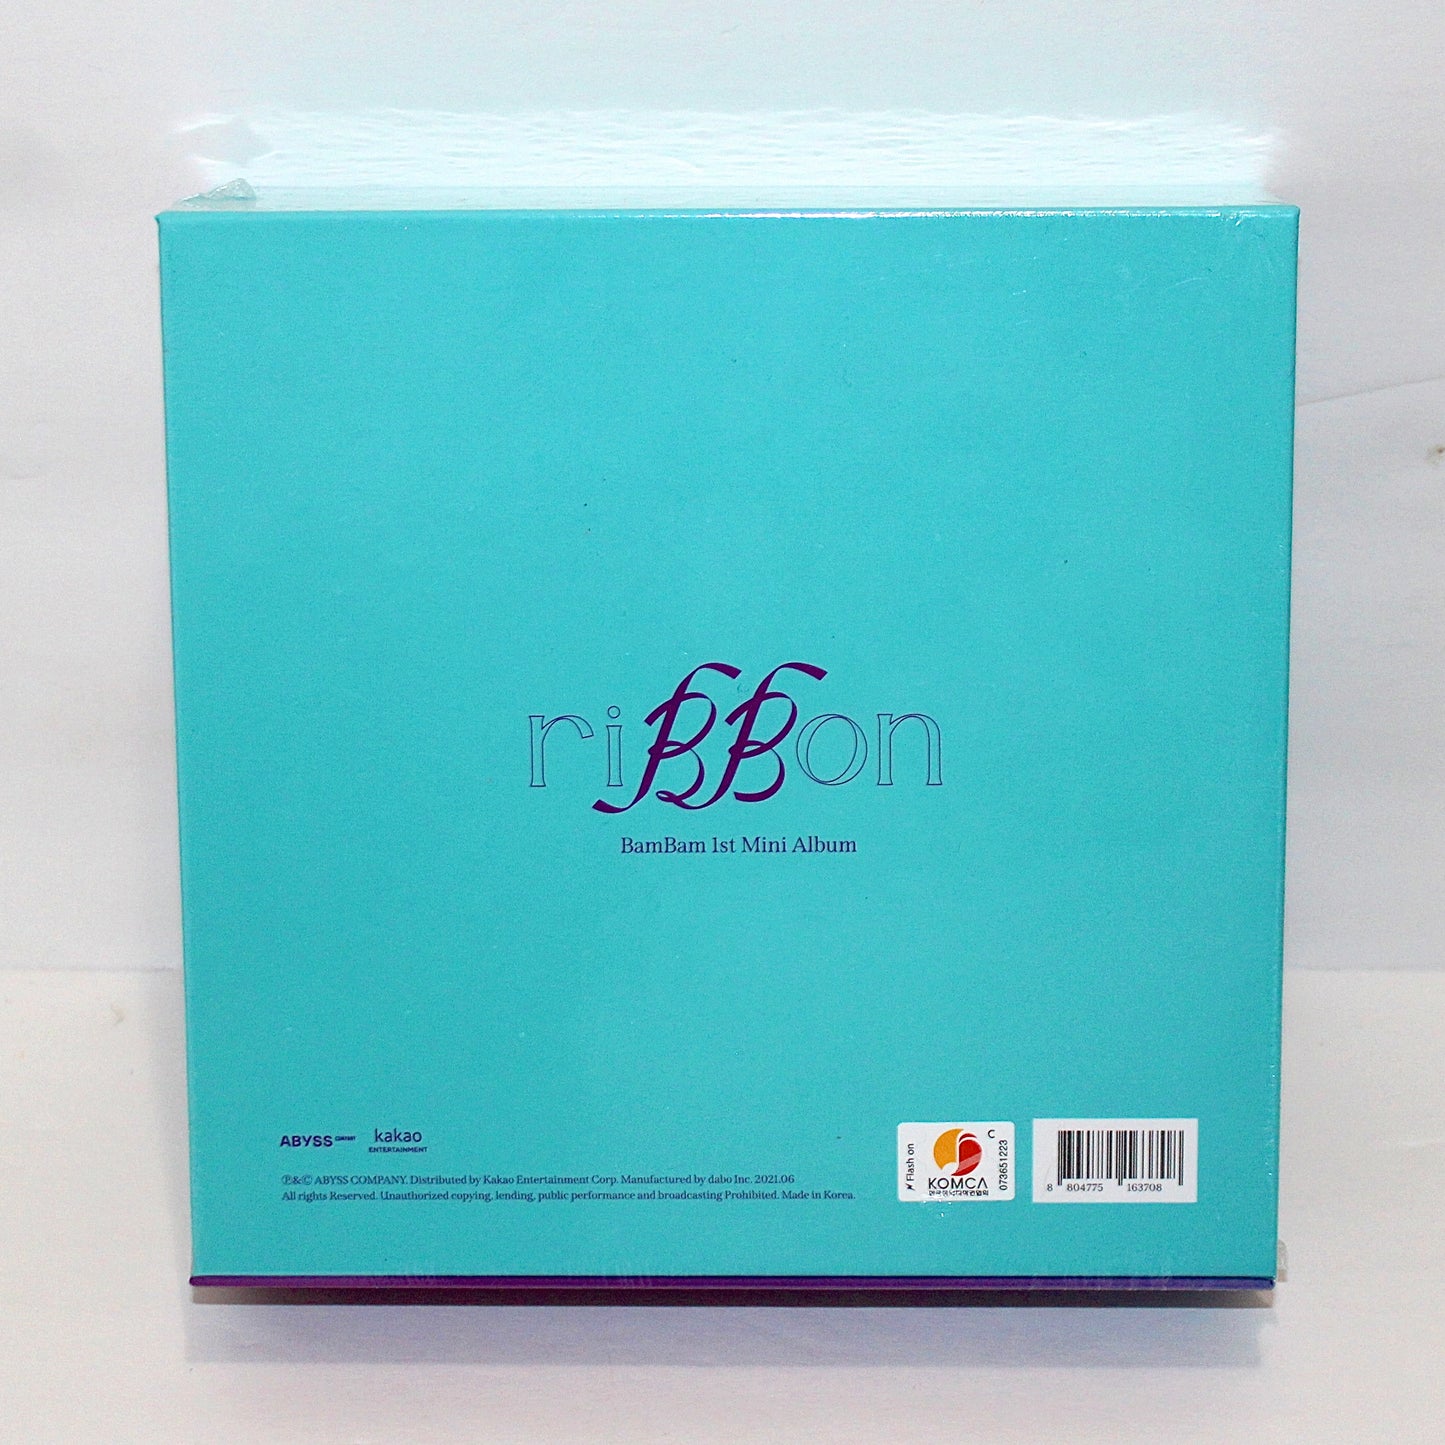 BAMBAM 1st Mini Album: Ribbon | riBBon Ver.